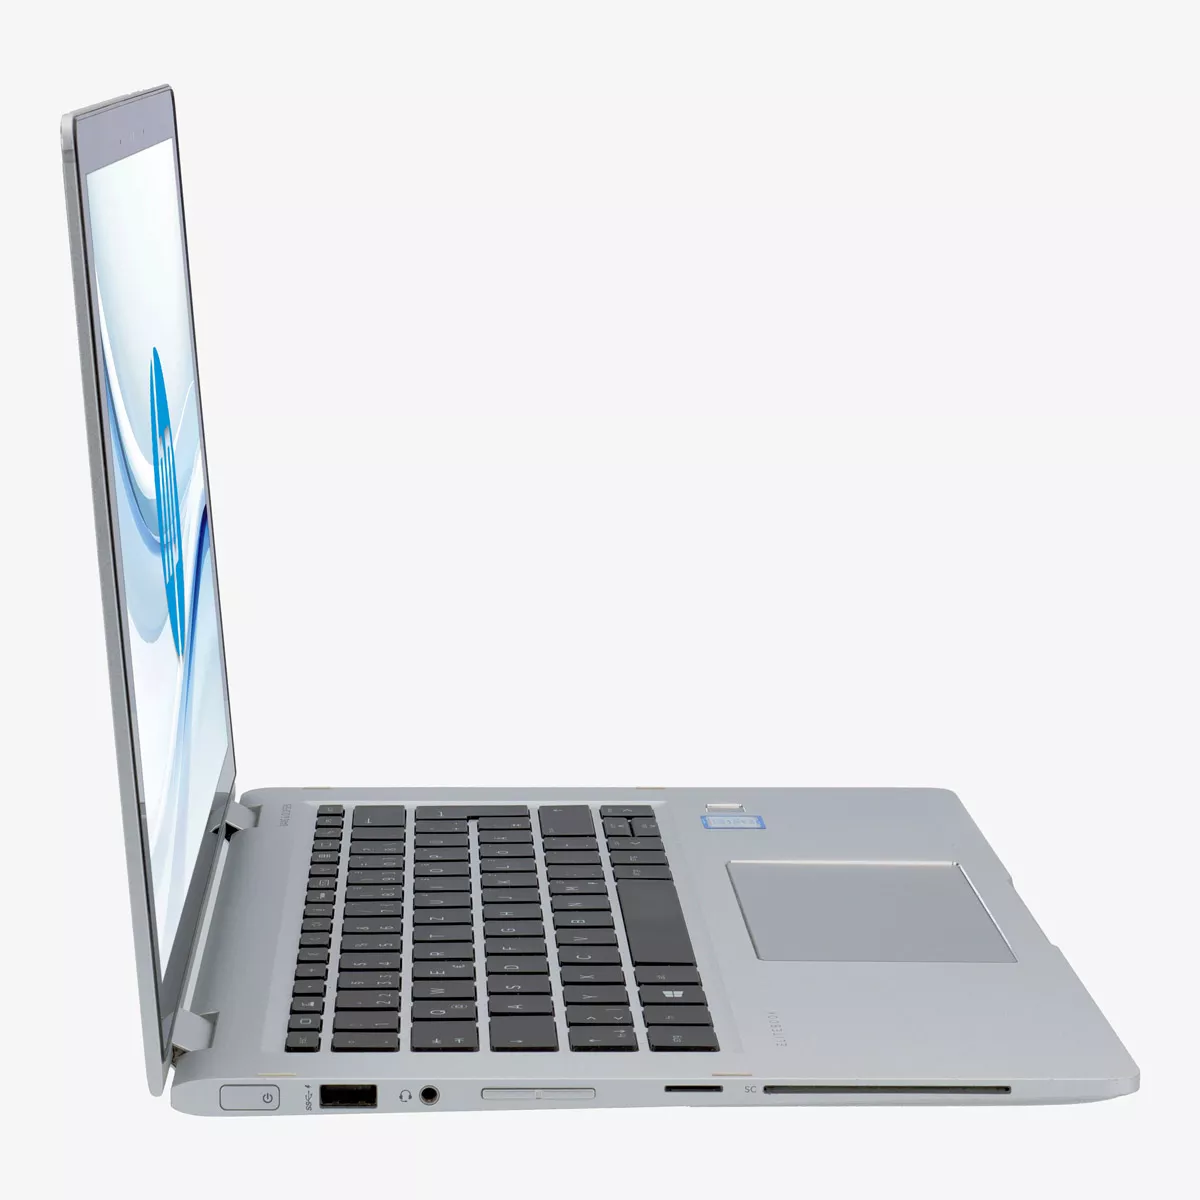 HP EliteBook x360 1030 G2 Core i5 7300U Touch 8 GB 500 GB M.2 nVME SSD Webcam A+